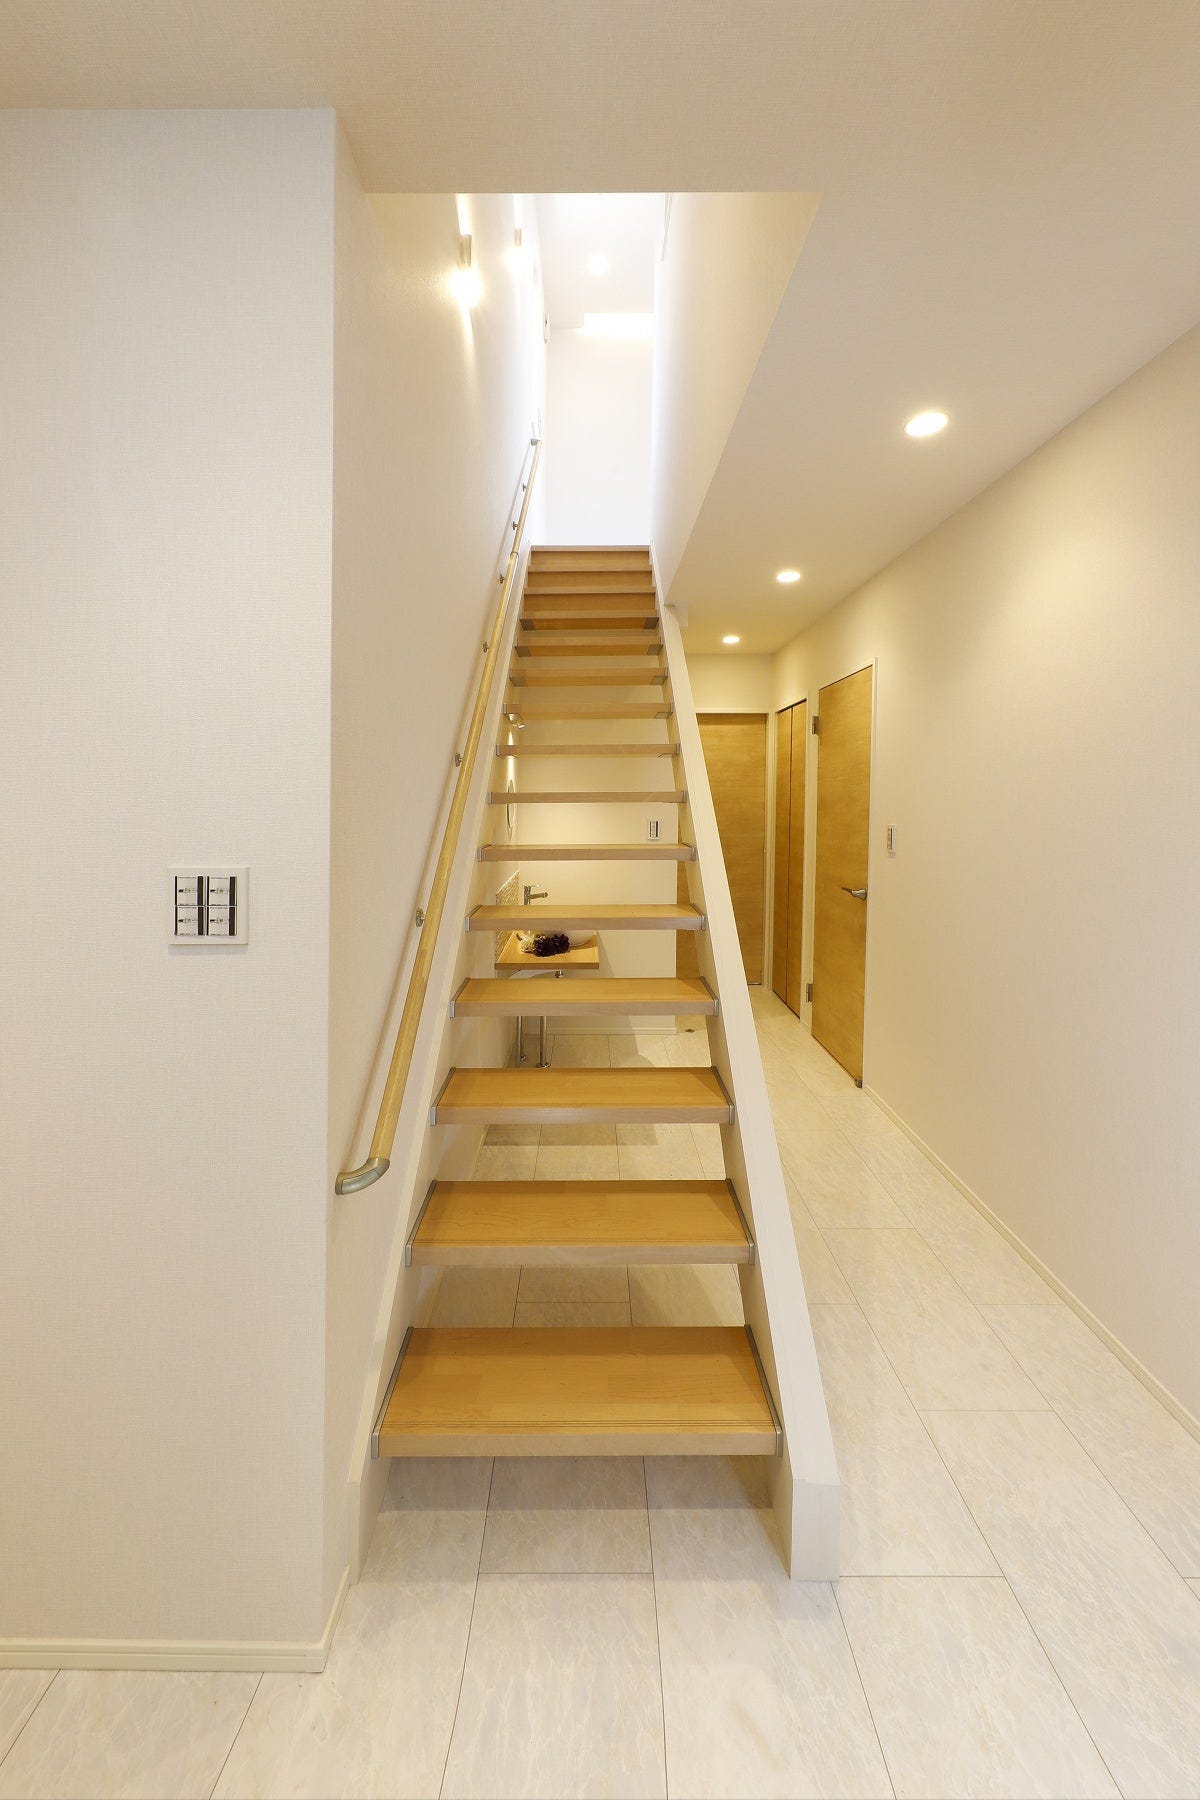 開放感とデザイン性のあるストリップ階段を採用